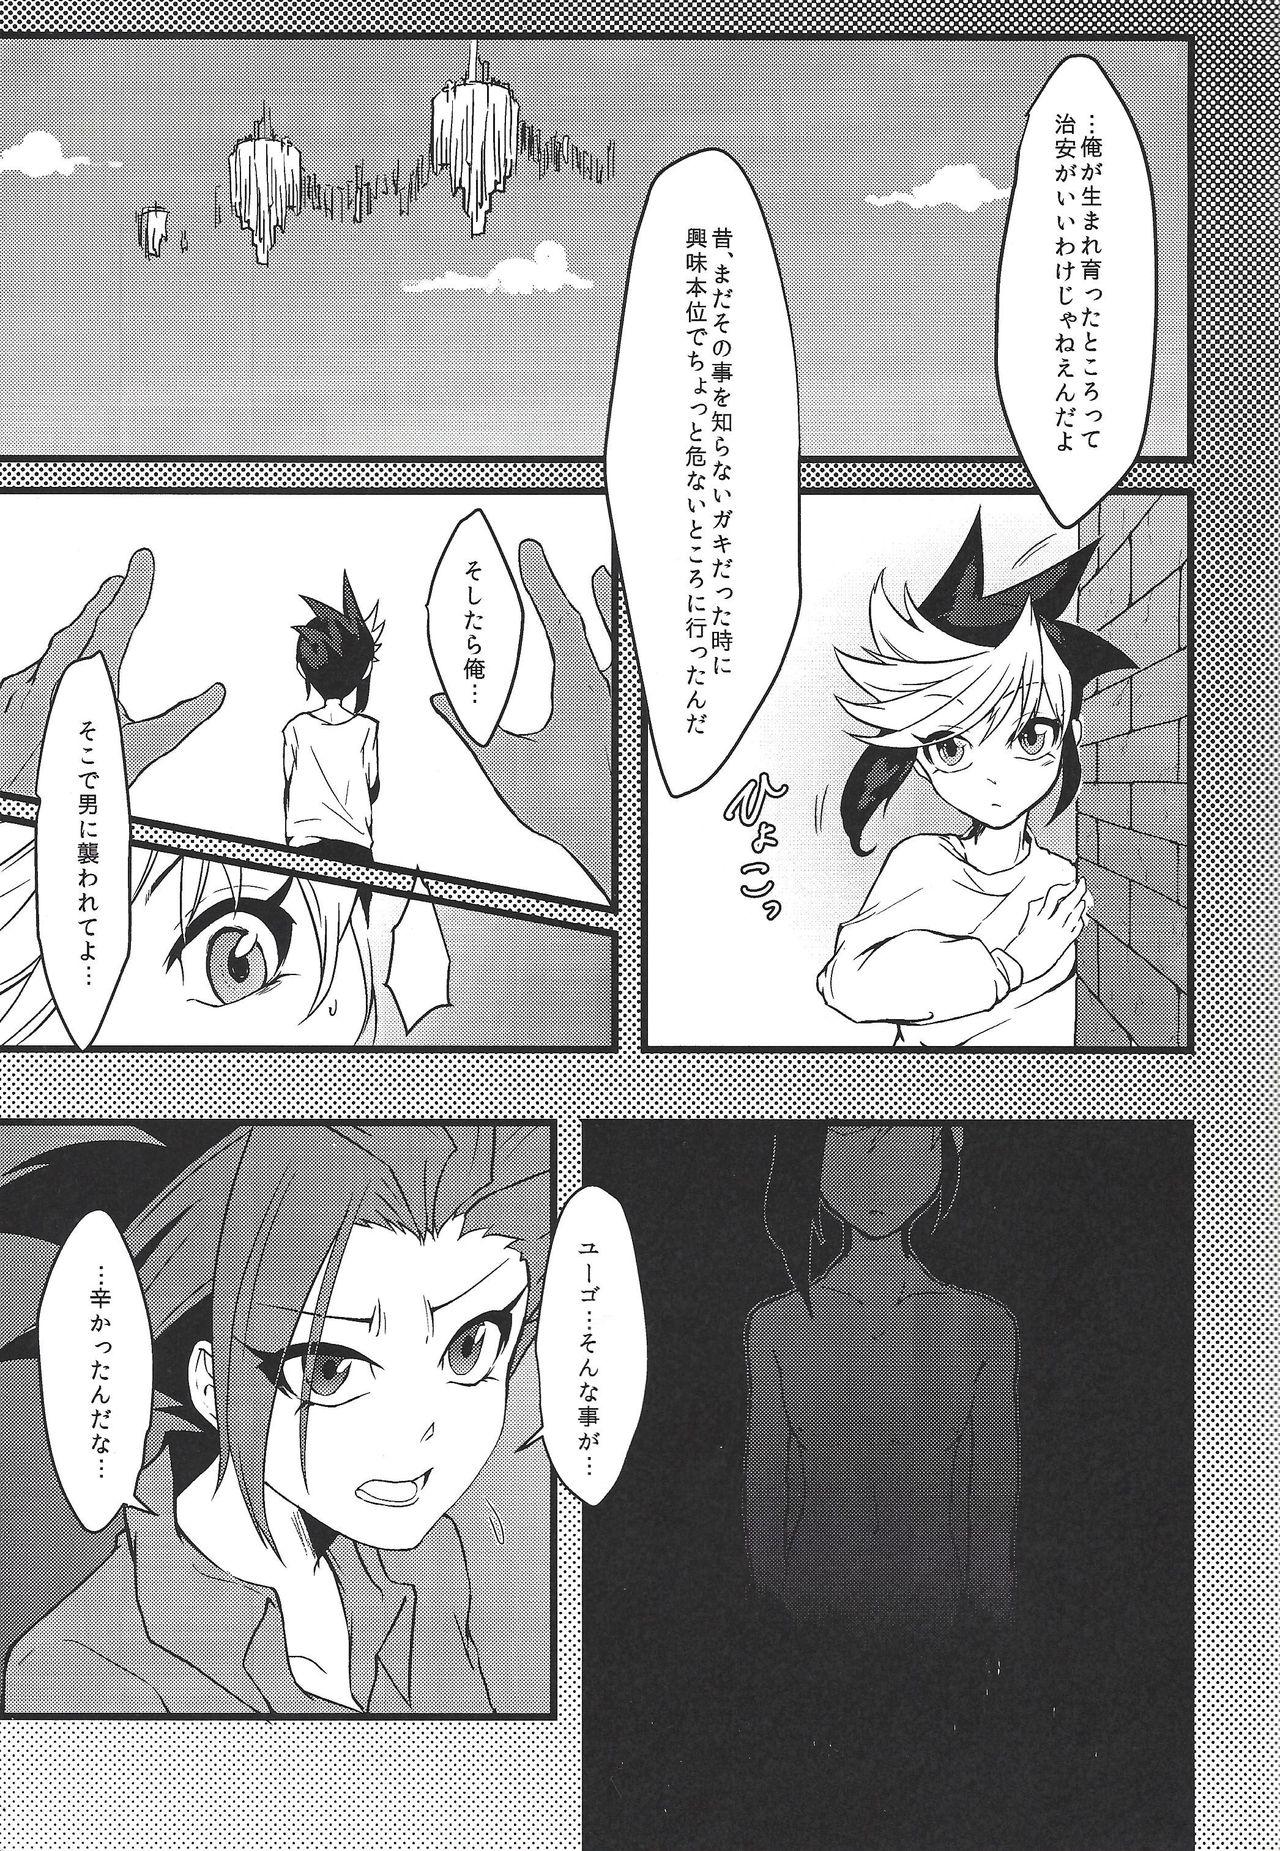 One Ore no Teisou o Yatsu ga Shinya ni Neratte Kita Kudan ni Tsuite - Yu-gi-oh arc-v Masturbate - Page 6